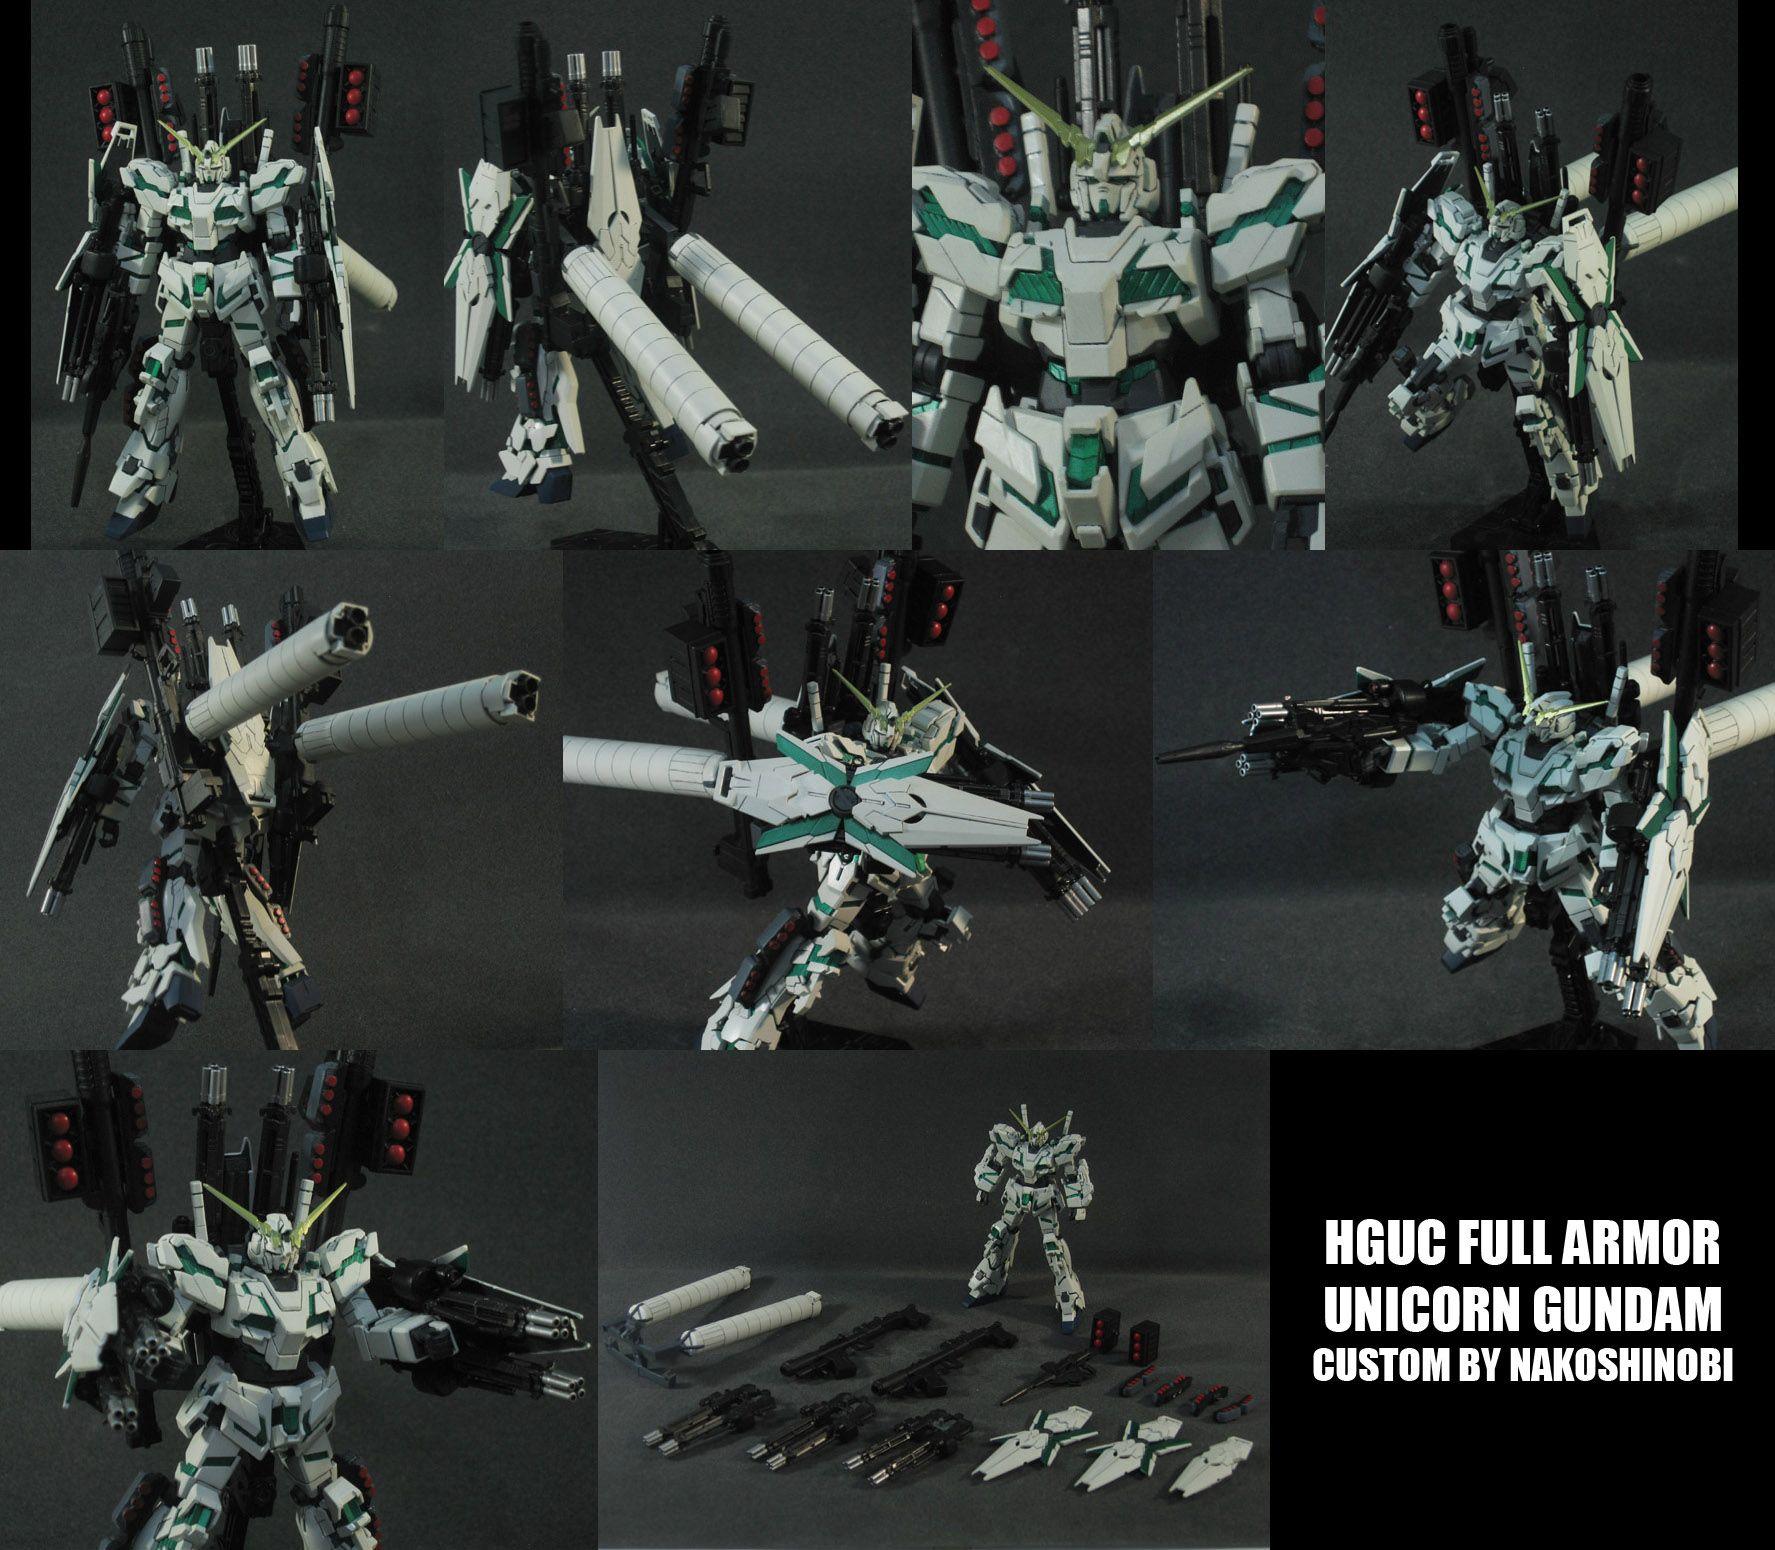 HGUC Full Armor Unicorn Gundam